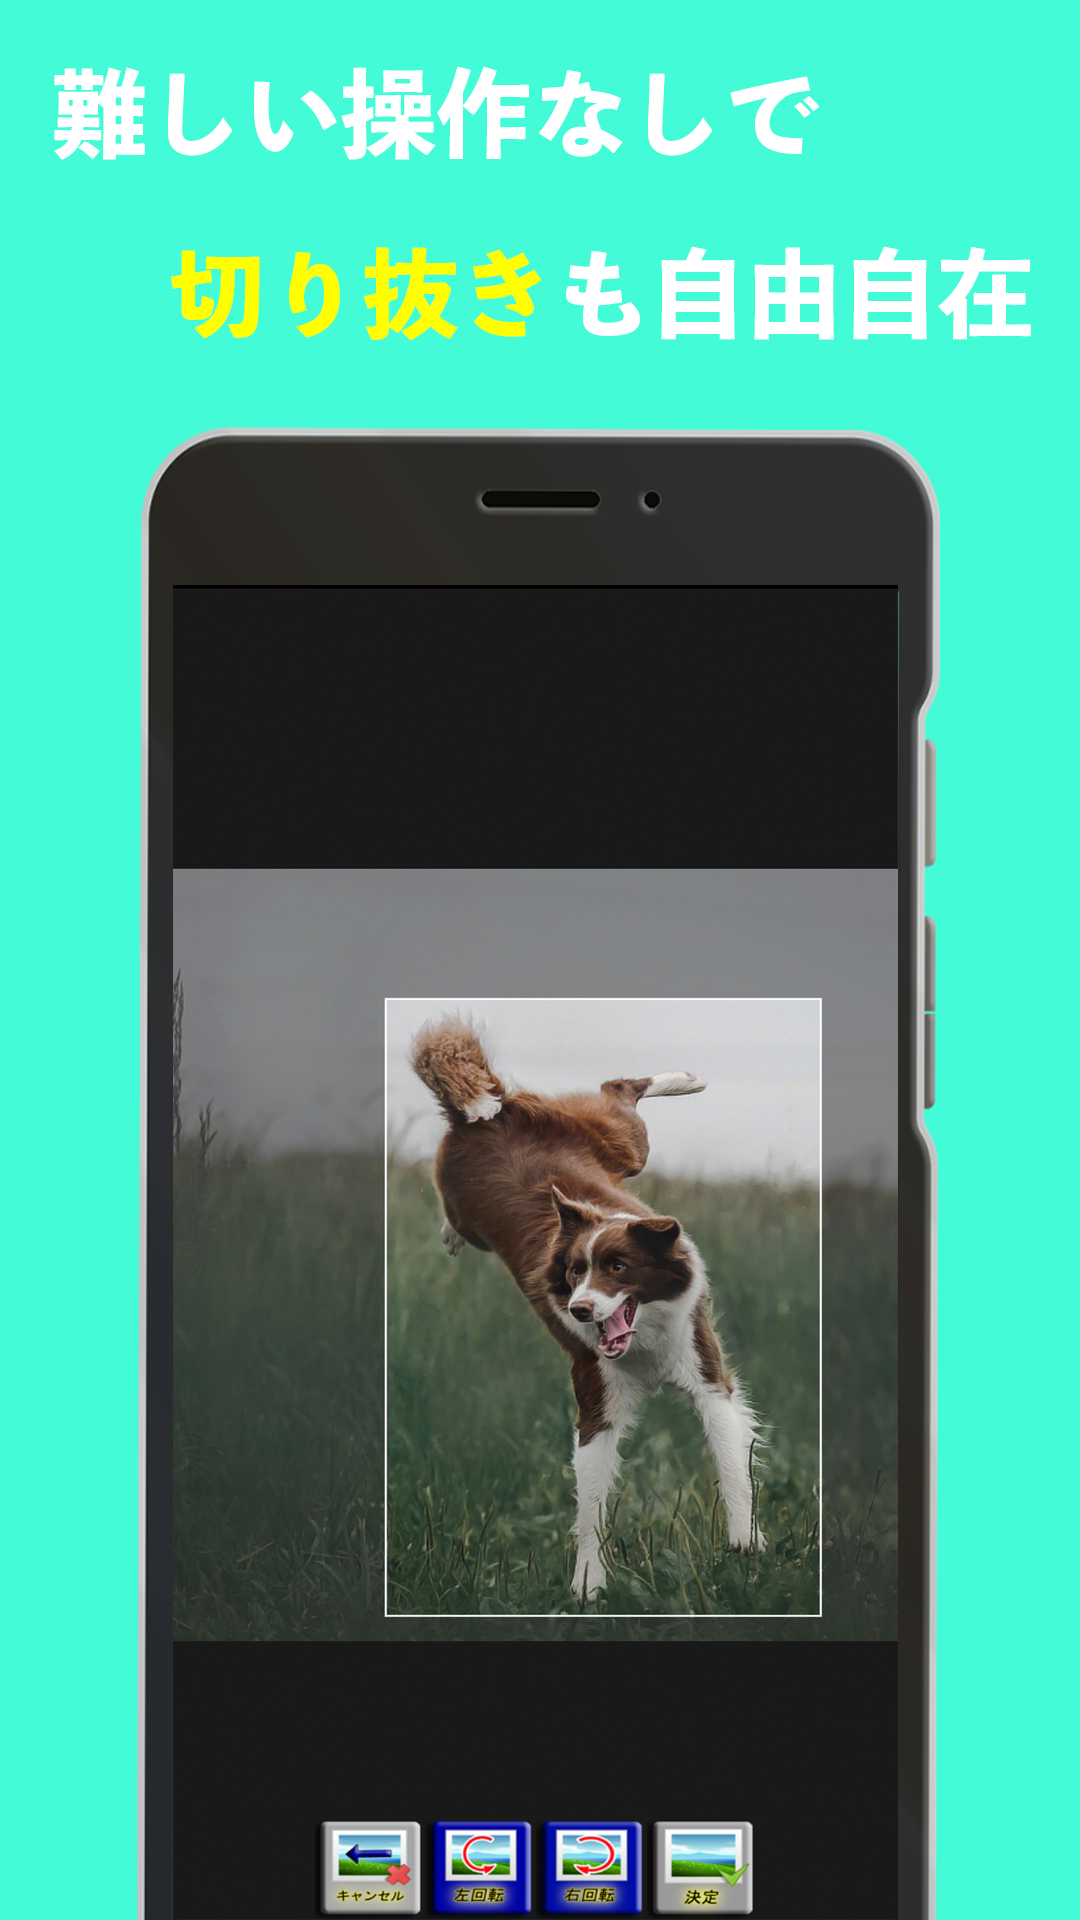 Android application 写真リサイズ / トリミング/モザイク - 画像の編集屋さん screenshort